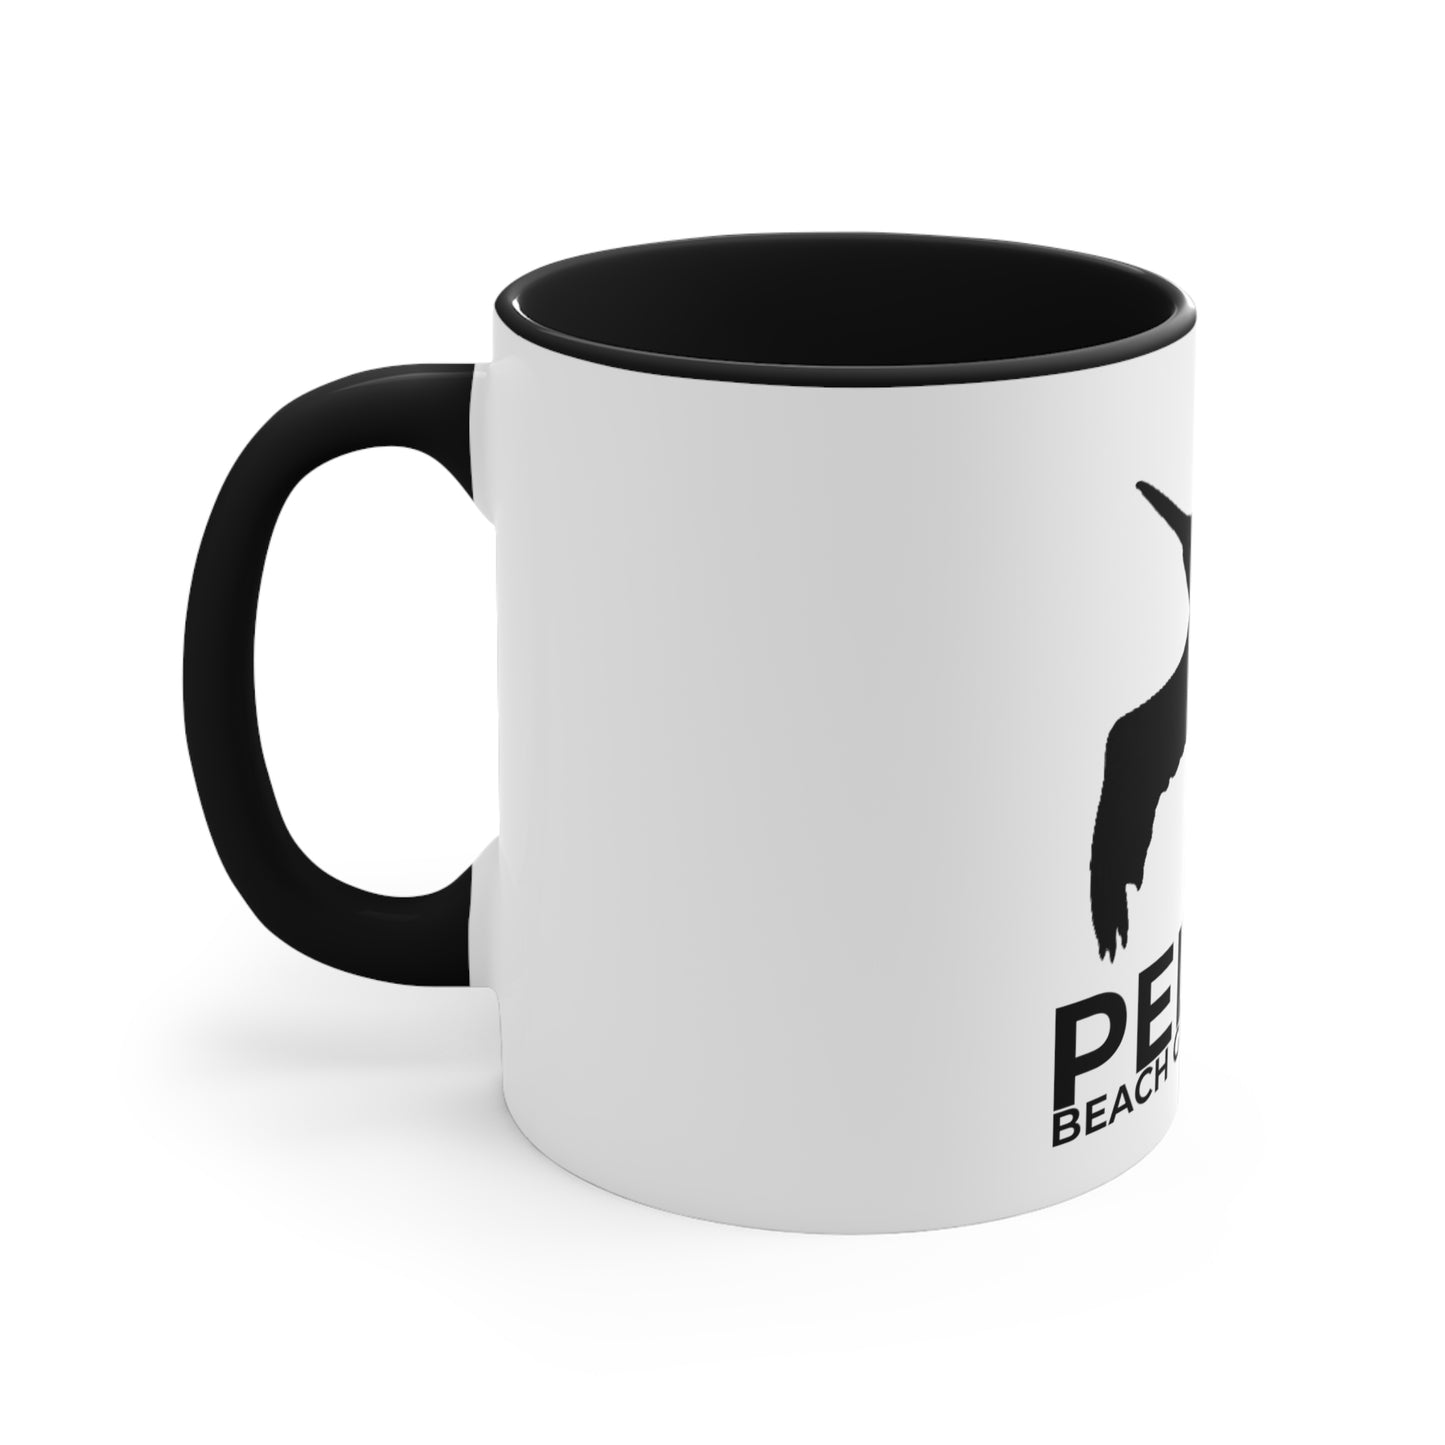 Pelican Beach Gear Official Coffee Mug